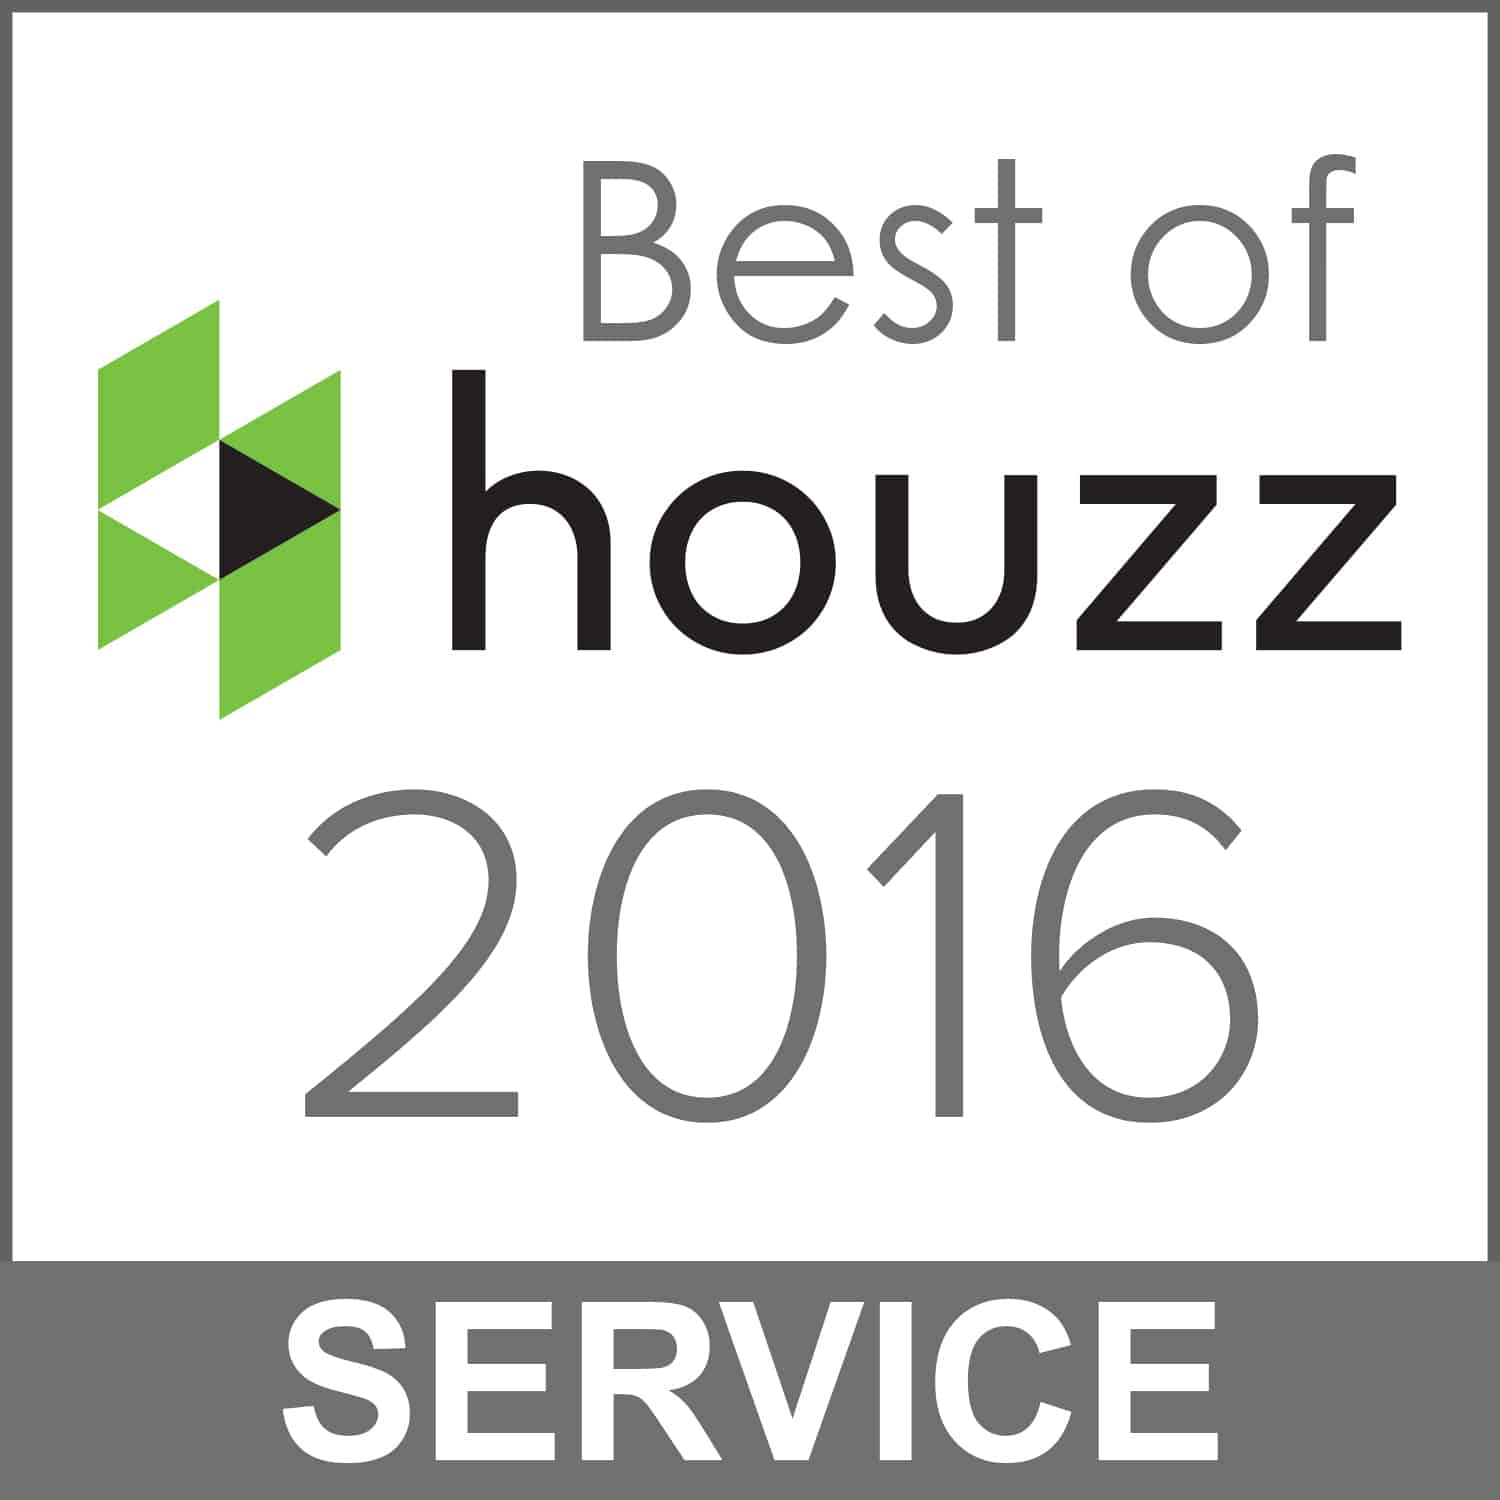 Best of houzz 2016 interior design service.